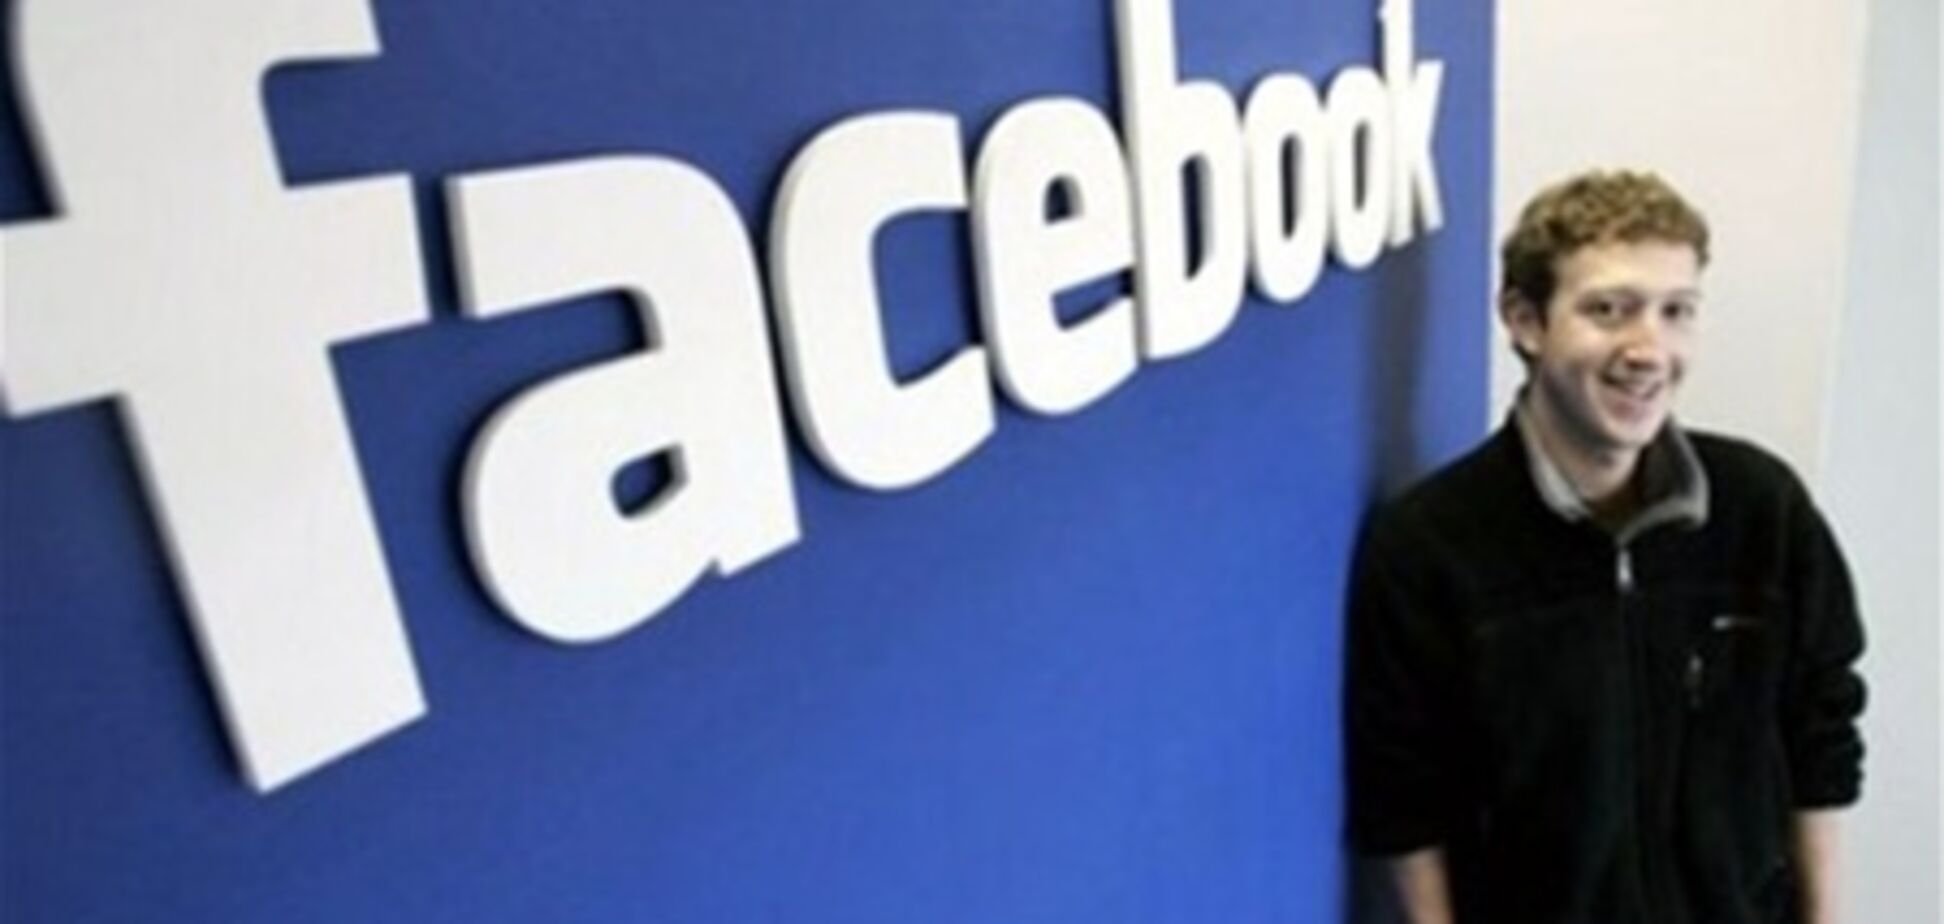 Цукерберга хотят 'убрать' из управления соцсетью Facebook